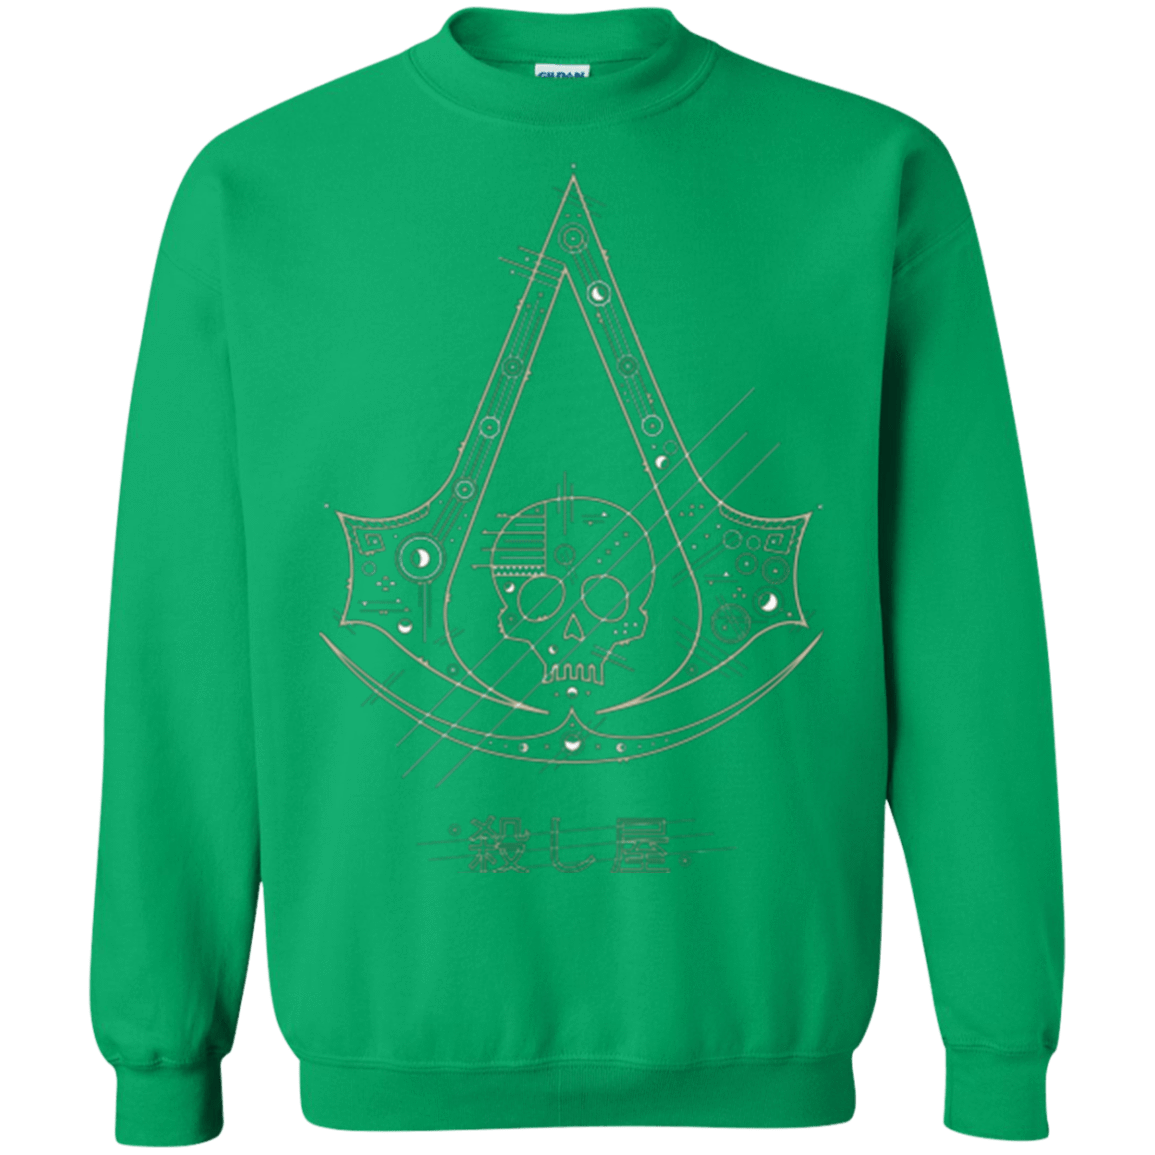 Sweatshirts Irish Green / Small Tech Creed Crewneck Sweatshirt